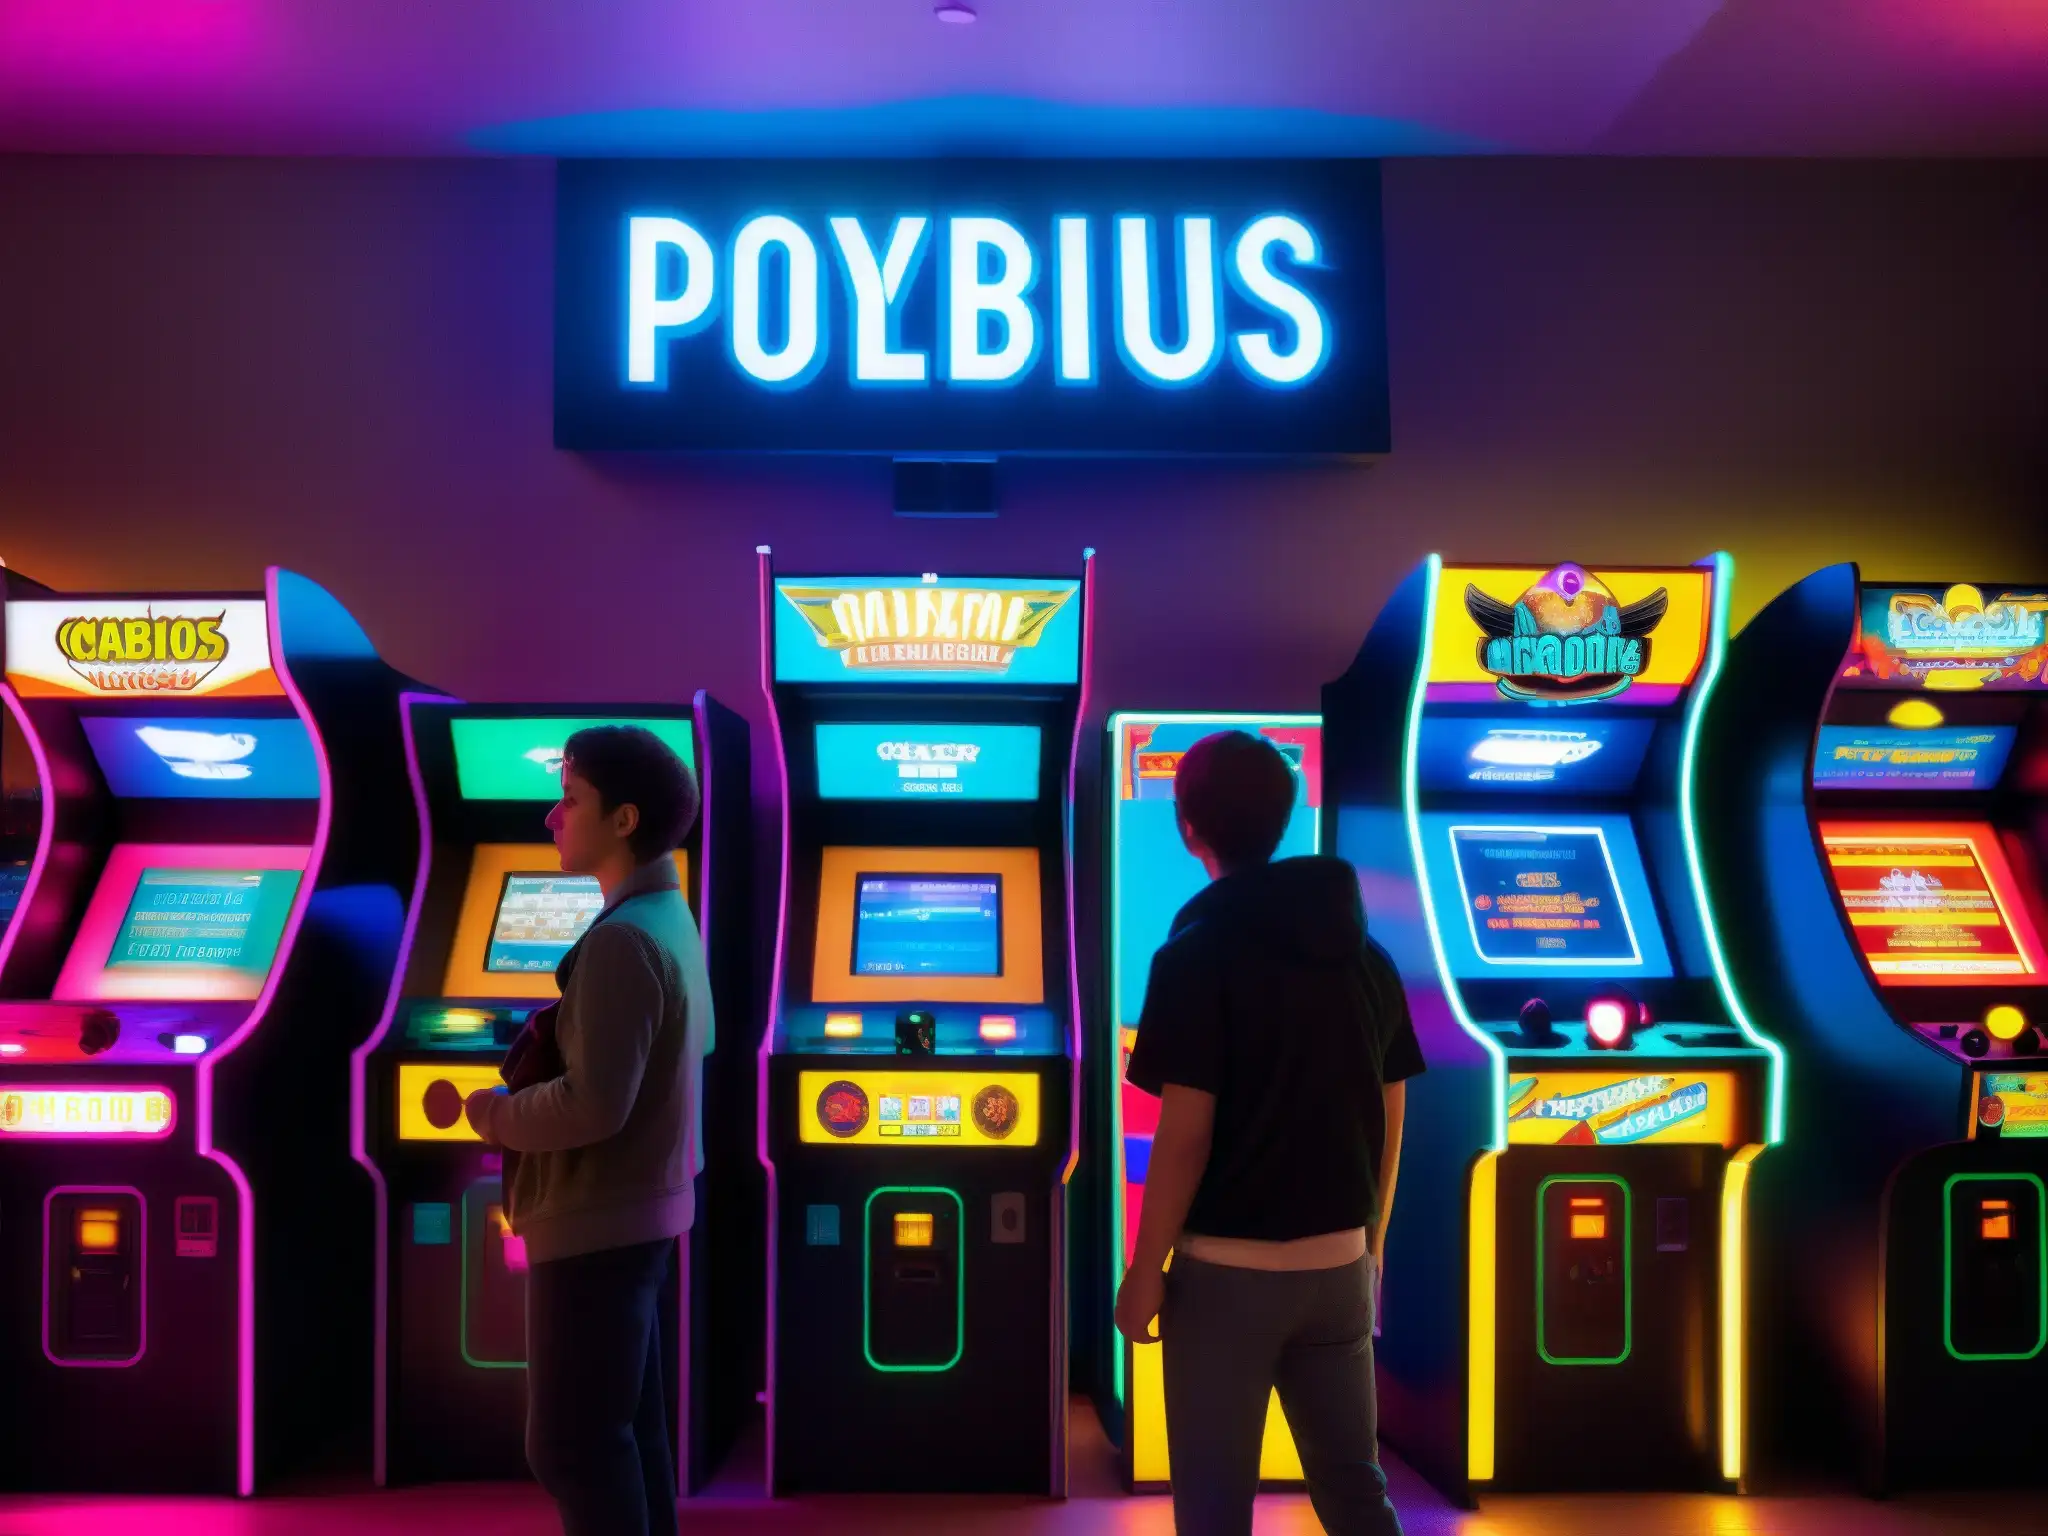 Un grupo de jóvenes se divierte en un arcade, rodeados de luces brillantes y pantallas